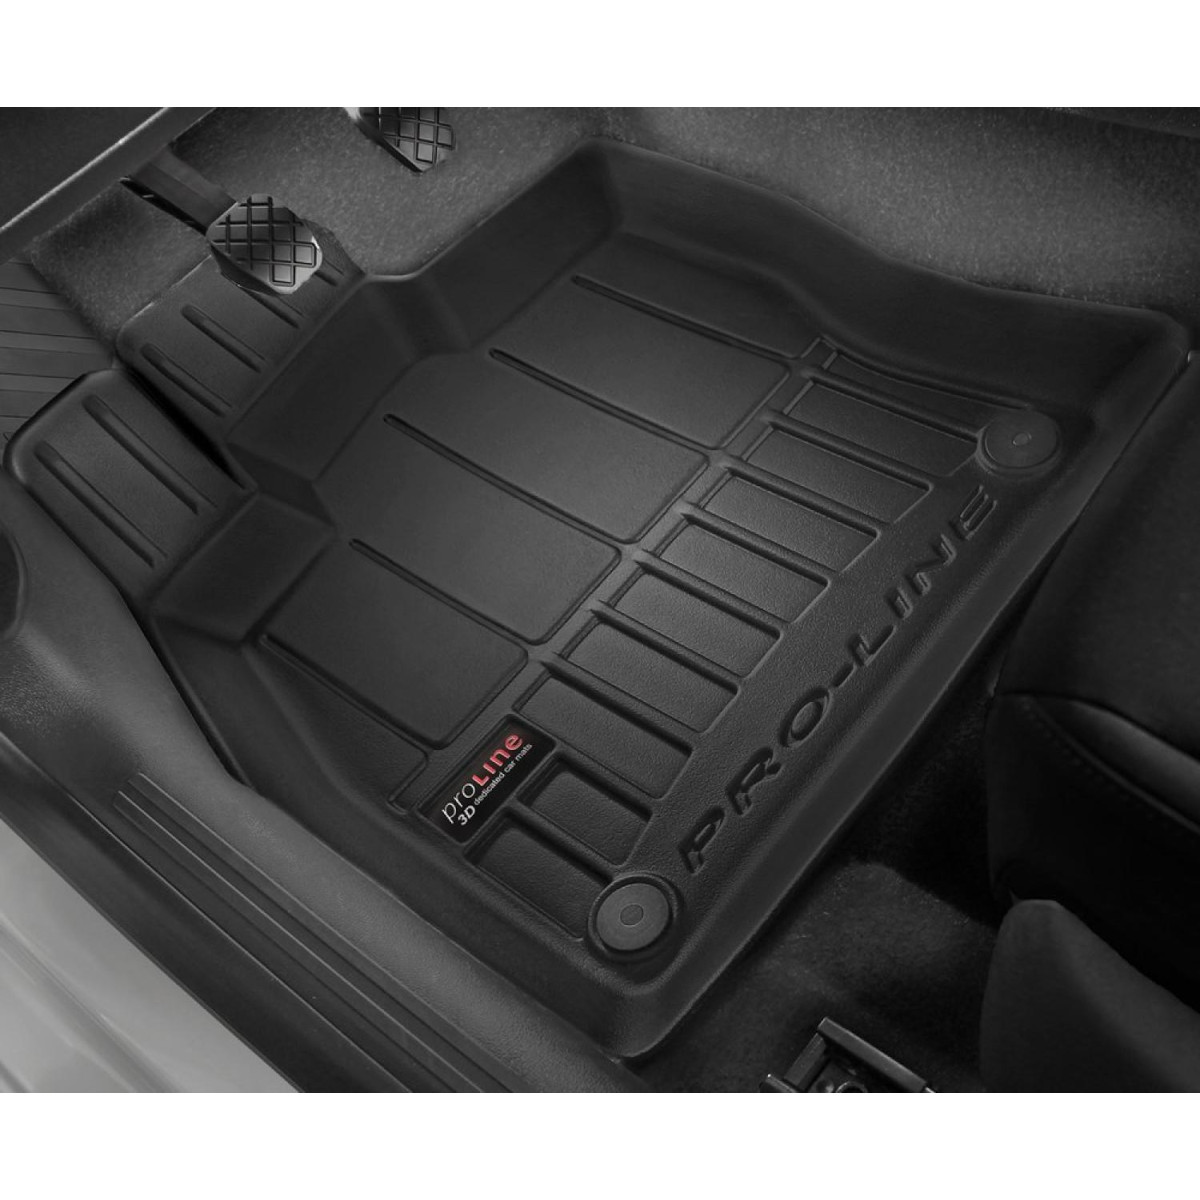 Guminiai kilimėliai Proline Subaru XV II nuo 2017m. / paaukštintais kraštais